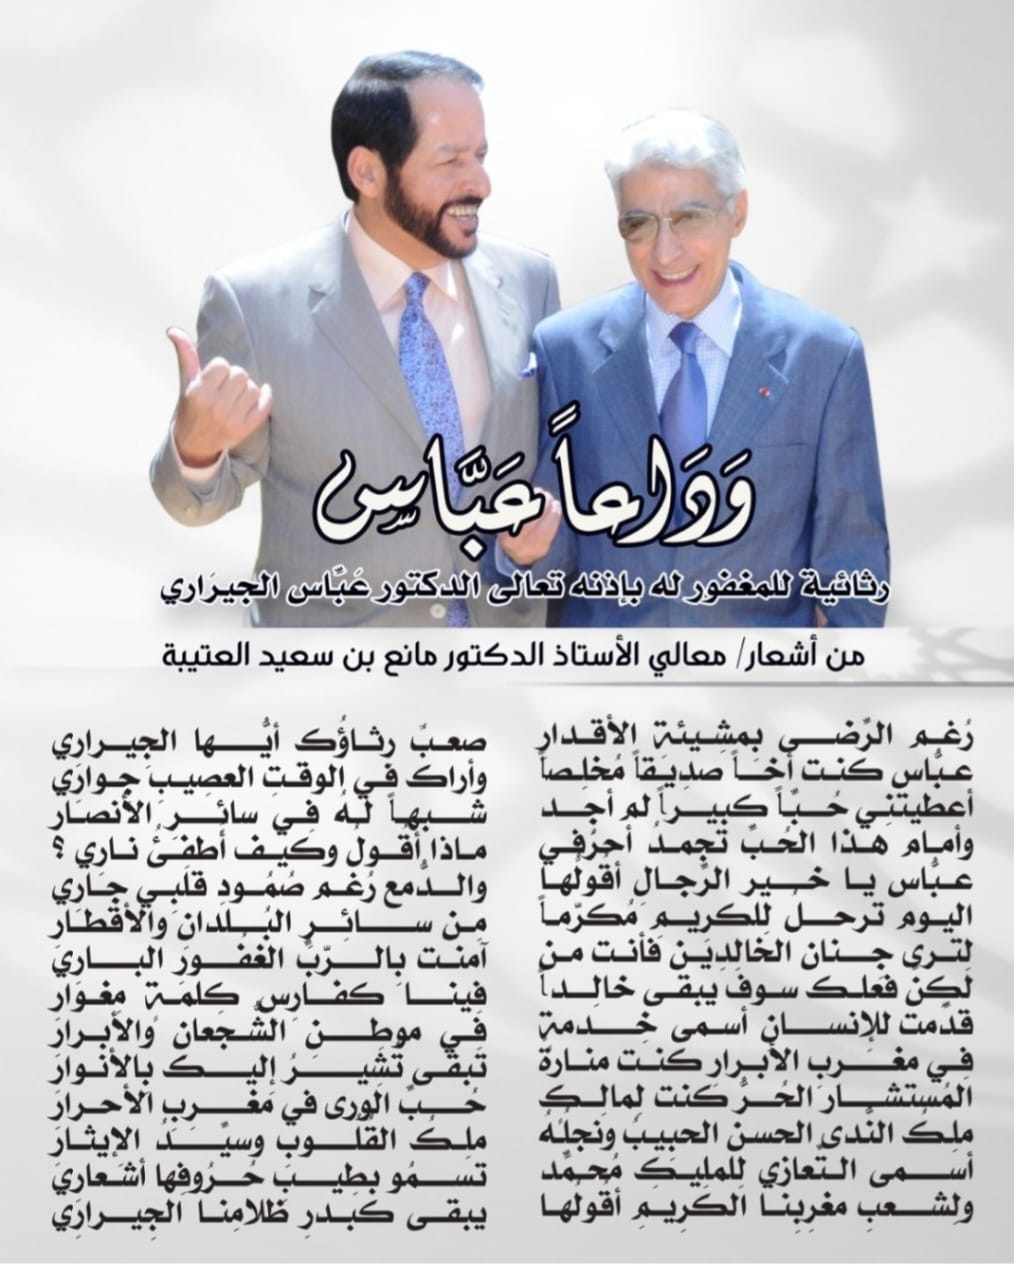 الدكتور "مانع بن سعيد العتيبة" يرثي الدكتور "عباس الجراري" المستشار الملكي السابق